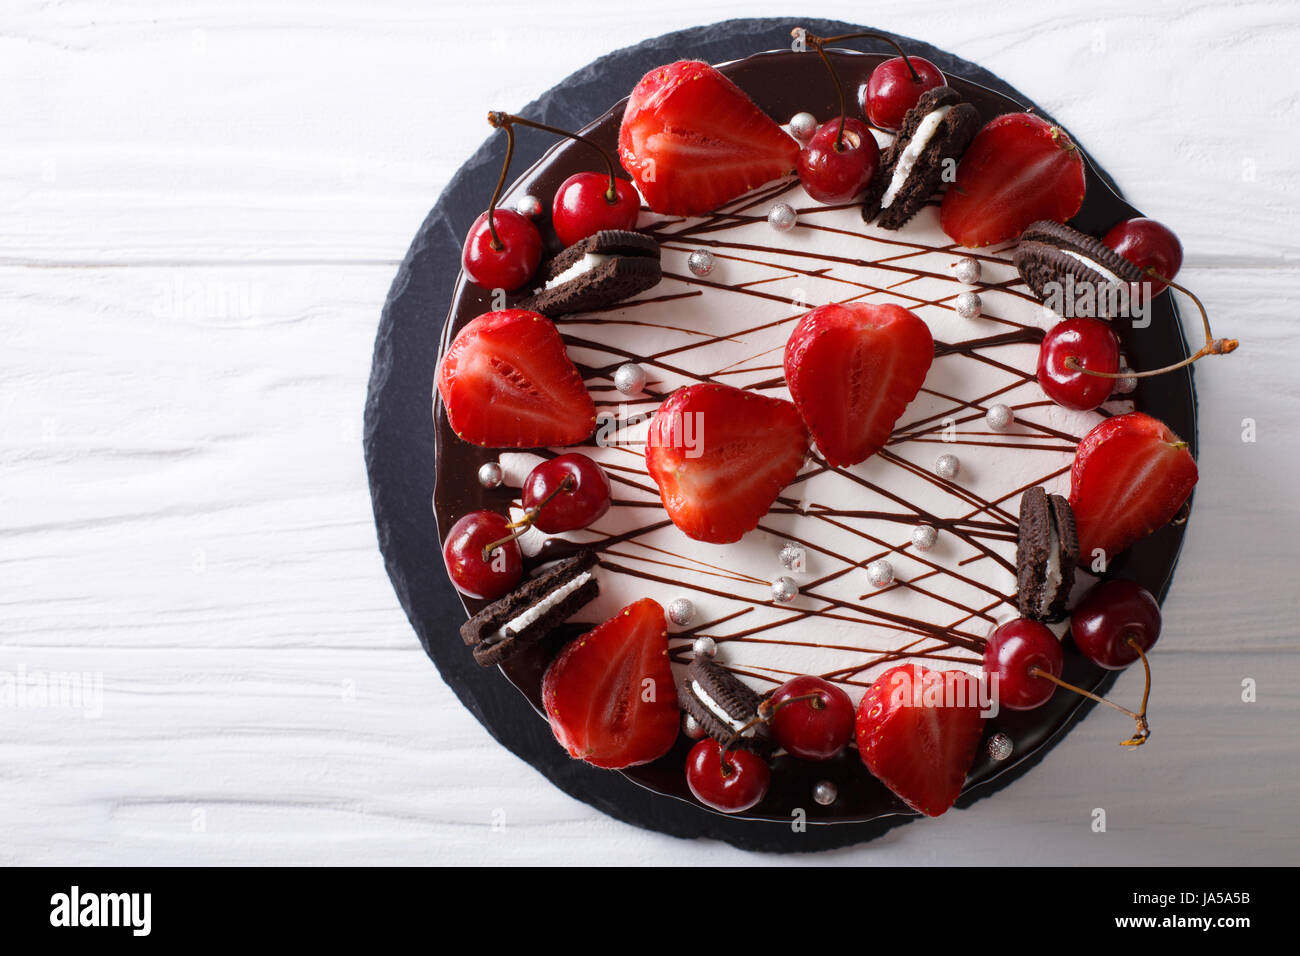 Festivo tarta de chocolate con fresa y cereza de cerca en la tabla vista desde arriba de la horizontal. Foto de stock